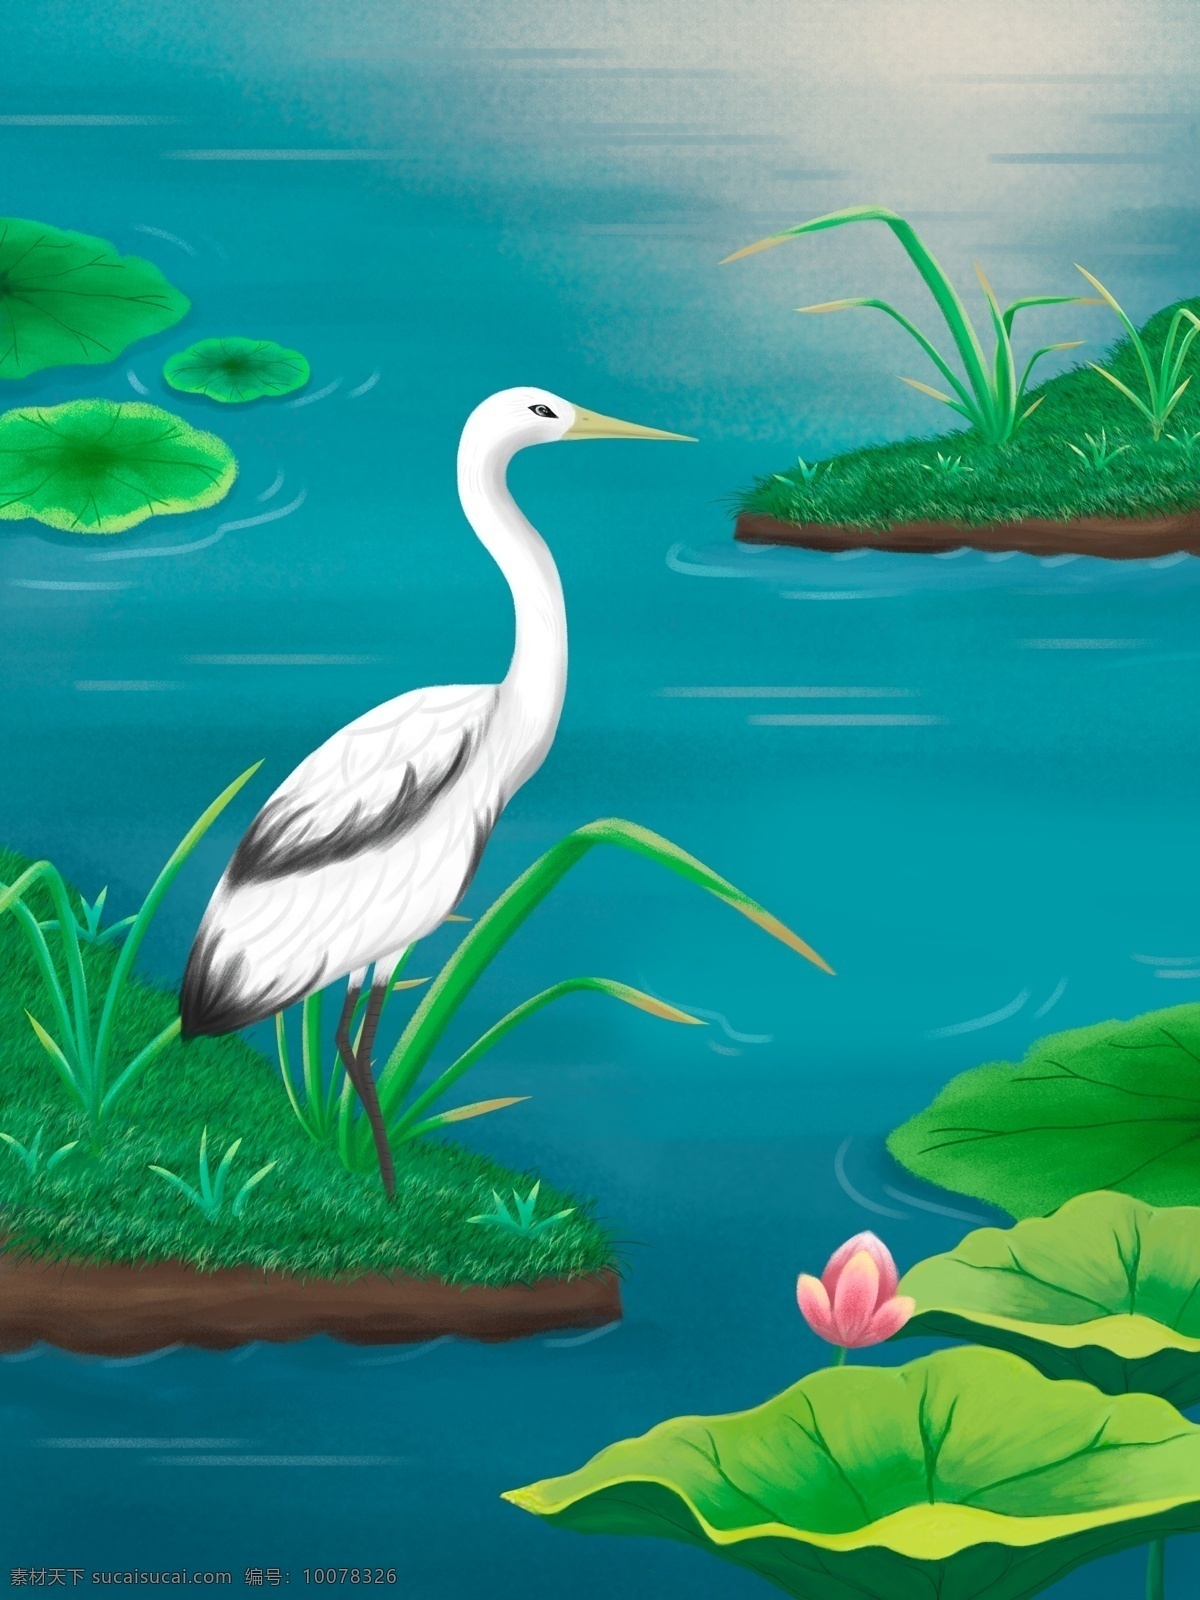 生态环境 春天 风景 背景 插画背景 植物背景 唯美 蓝天白云 叶子 河边 山水风景 小鸟